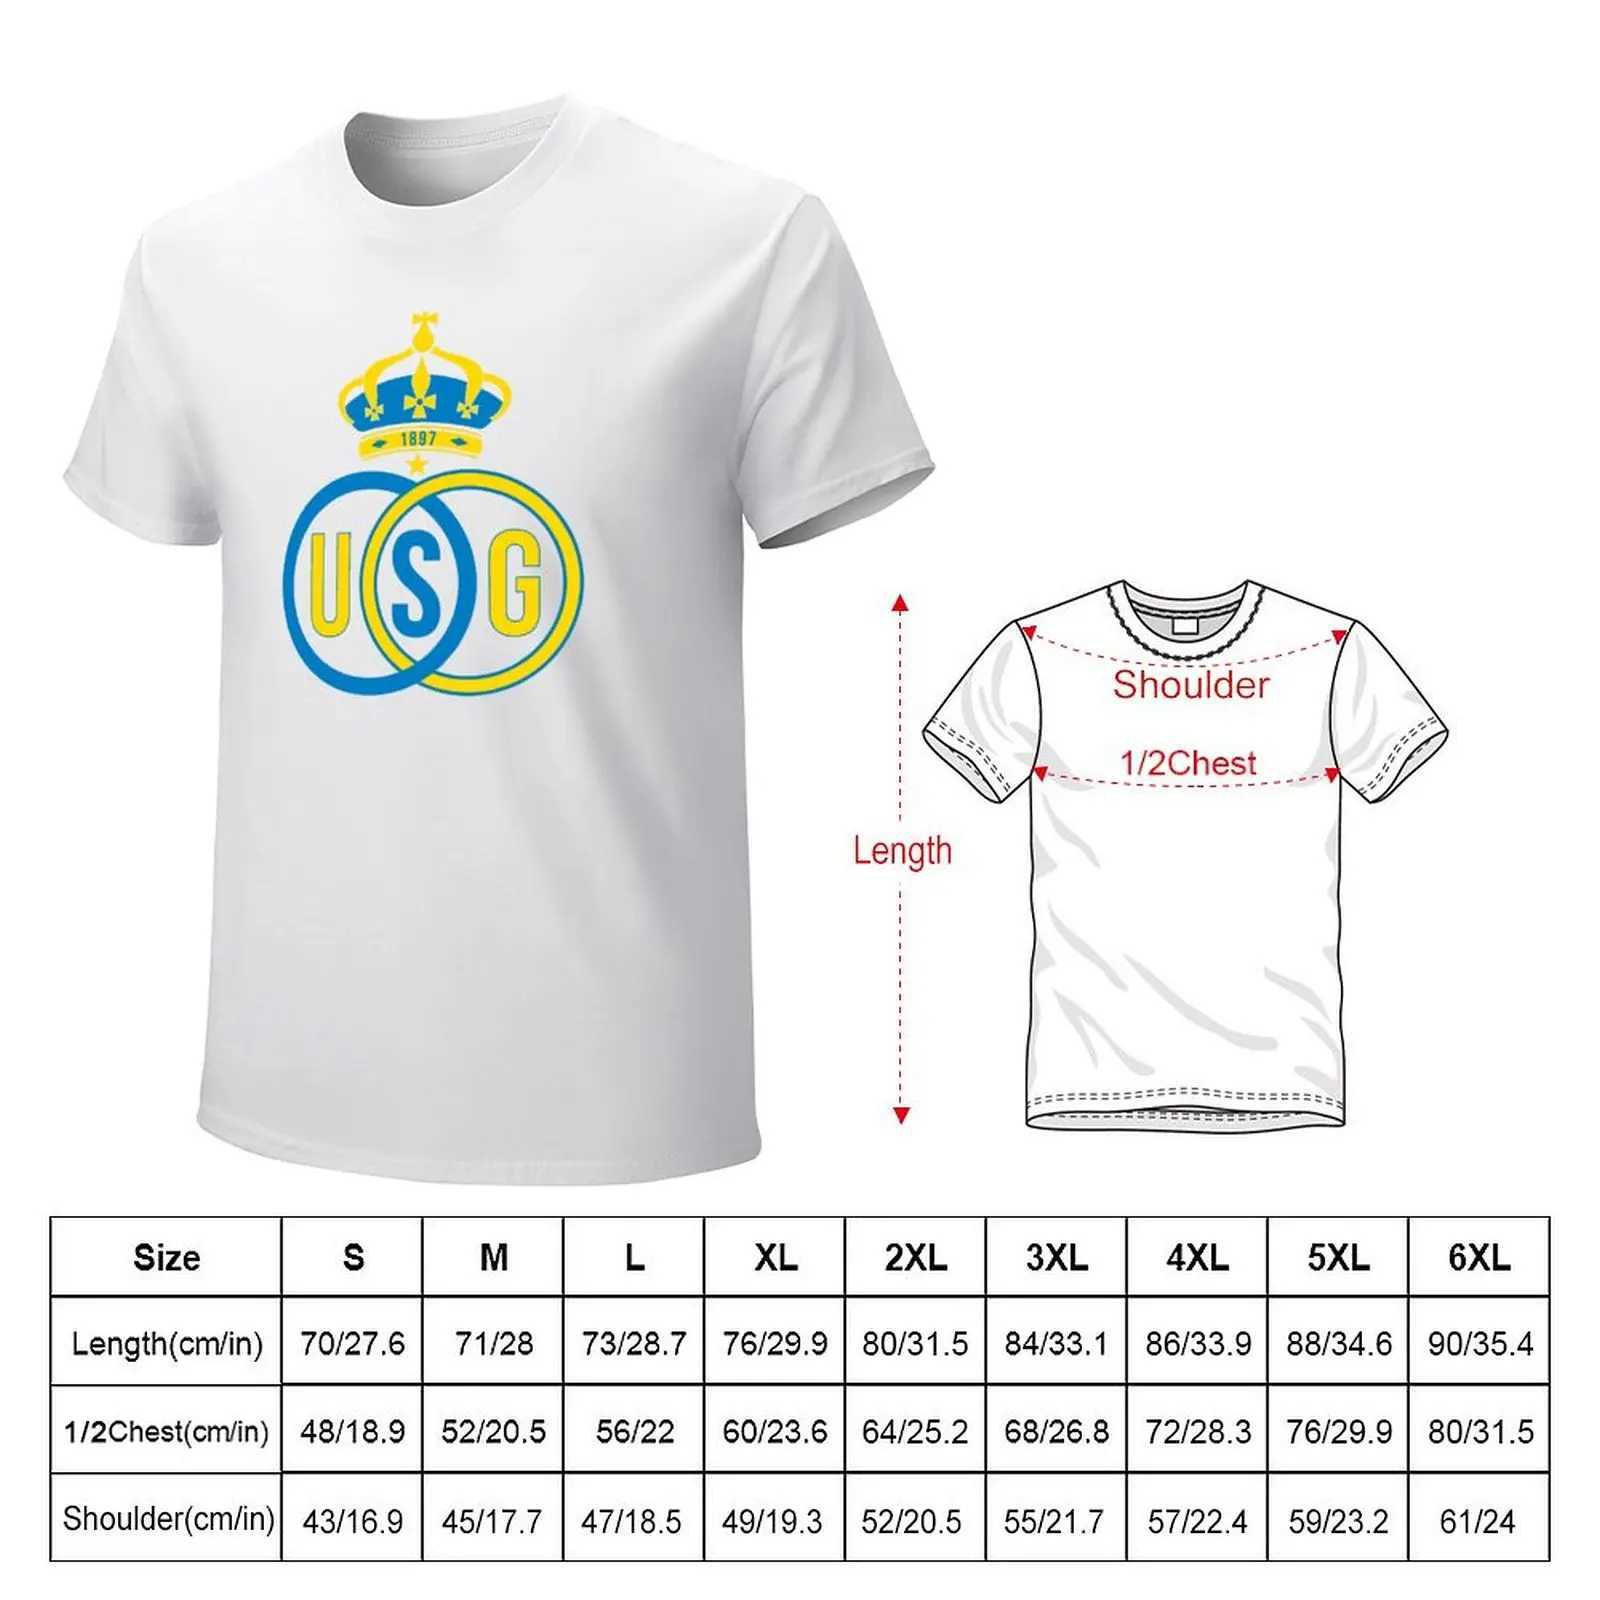 Men's T-Shirts Royal Union Saint Gilloise T-Shirts white vintage mens T-shirt setL2403